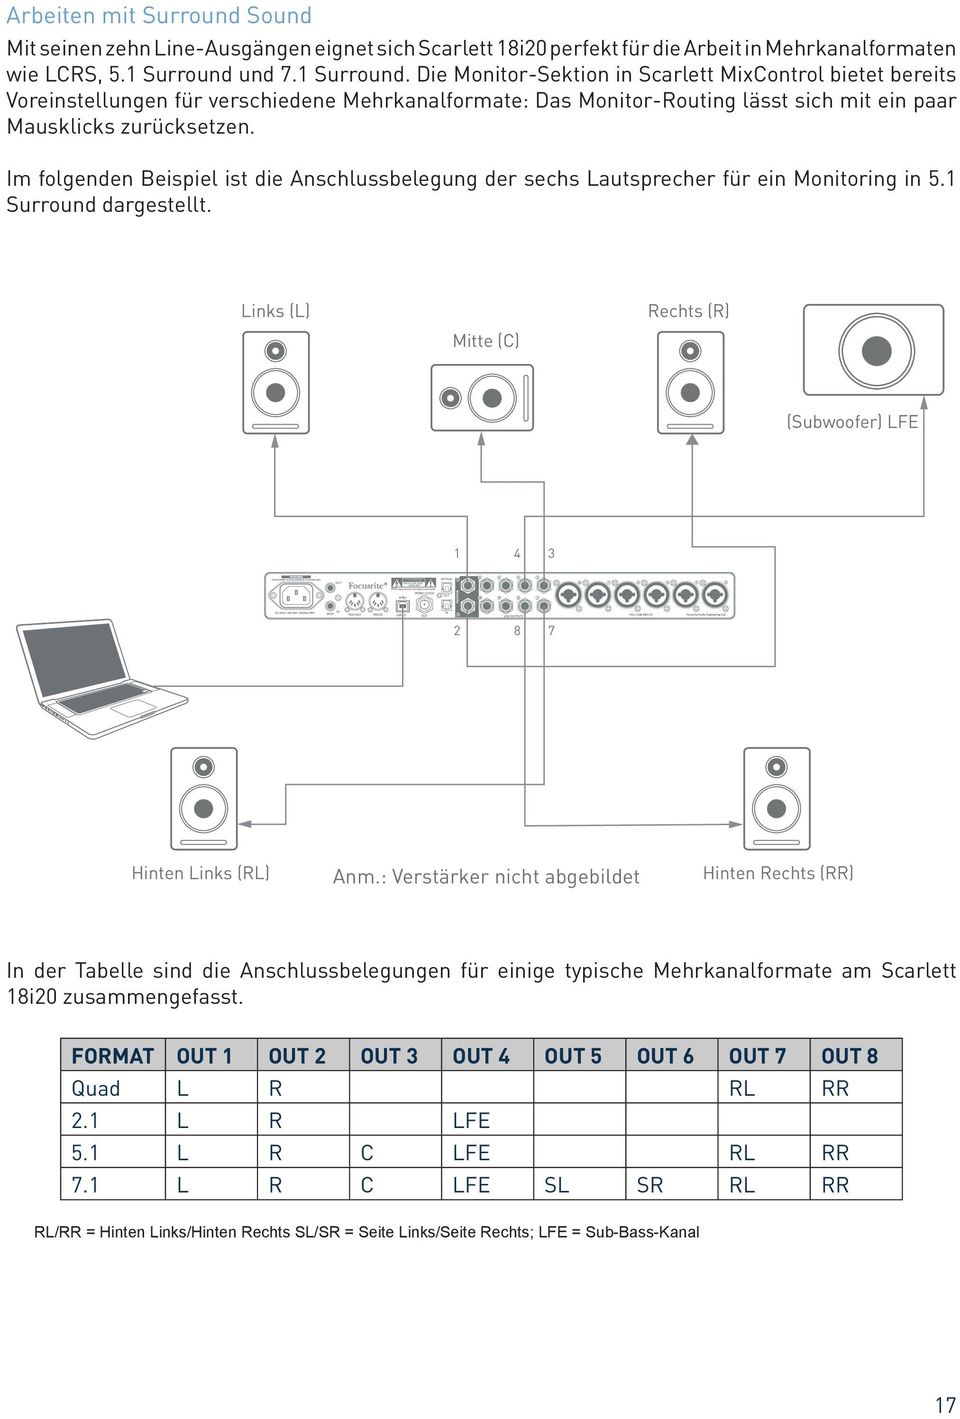 Im folgenden Beispiel ist die Anschlussbelegung der sechs Lautsprecher für ein Monitoring in 5.1 Surround dargestellt. Links (L) Mitte (C) Rechts (R) (Subwoofer) LFE 1 4 3 2 8 7 Hinten Links (RL) Anm.